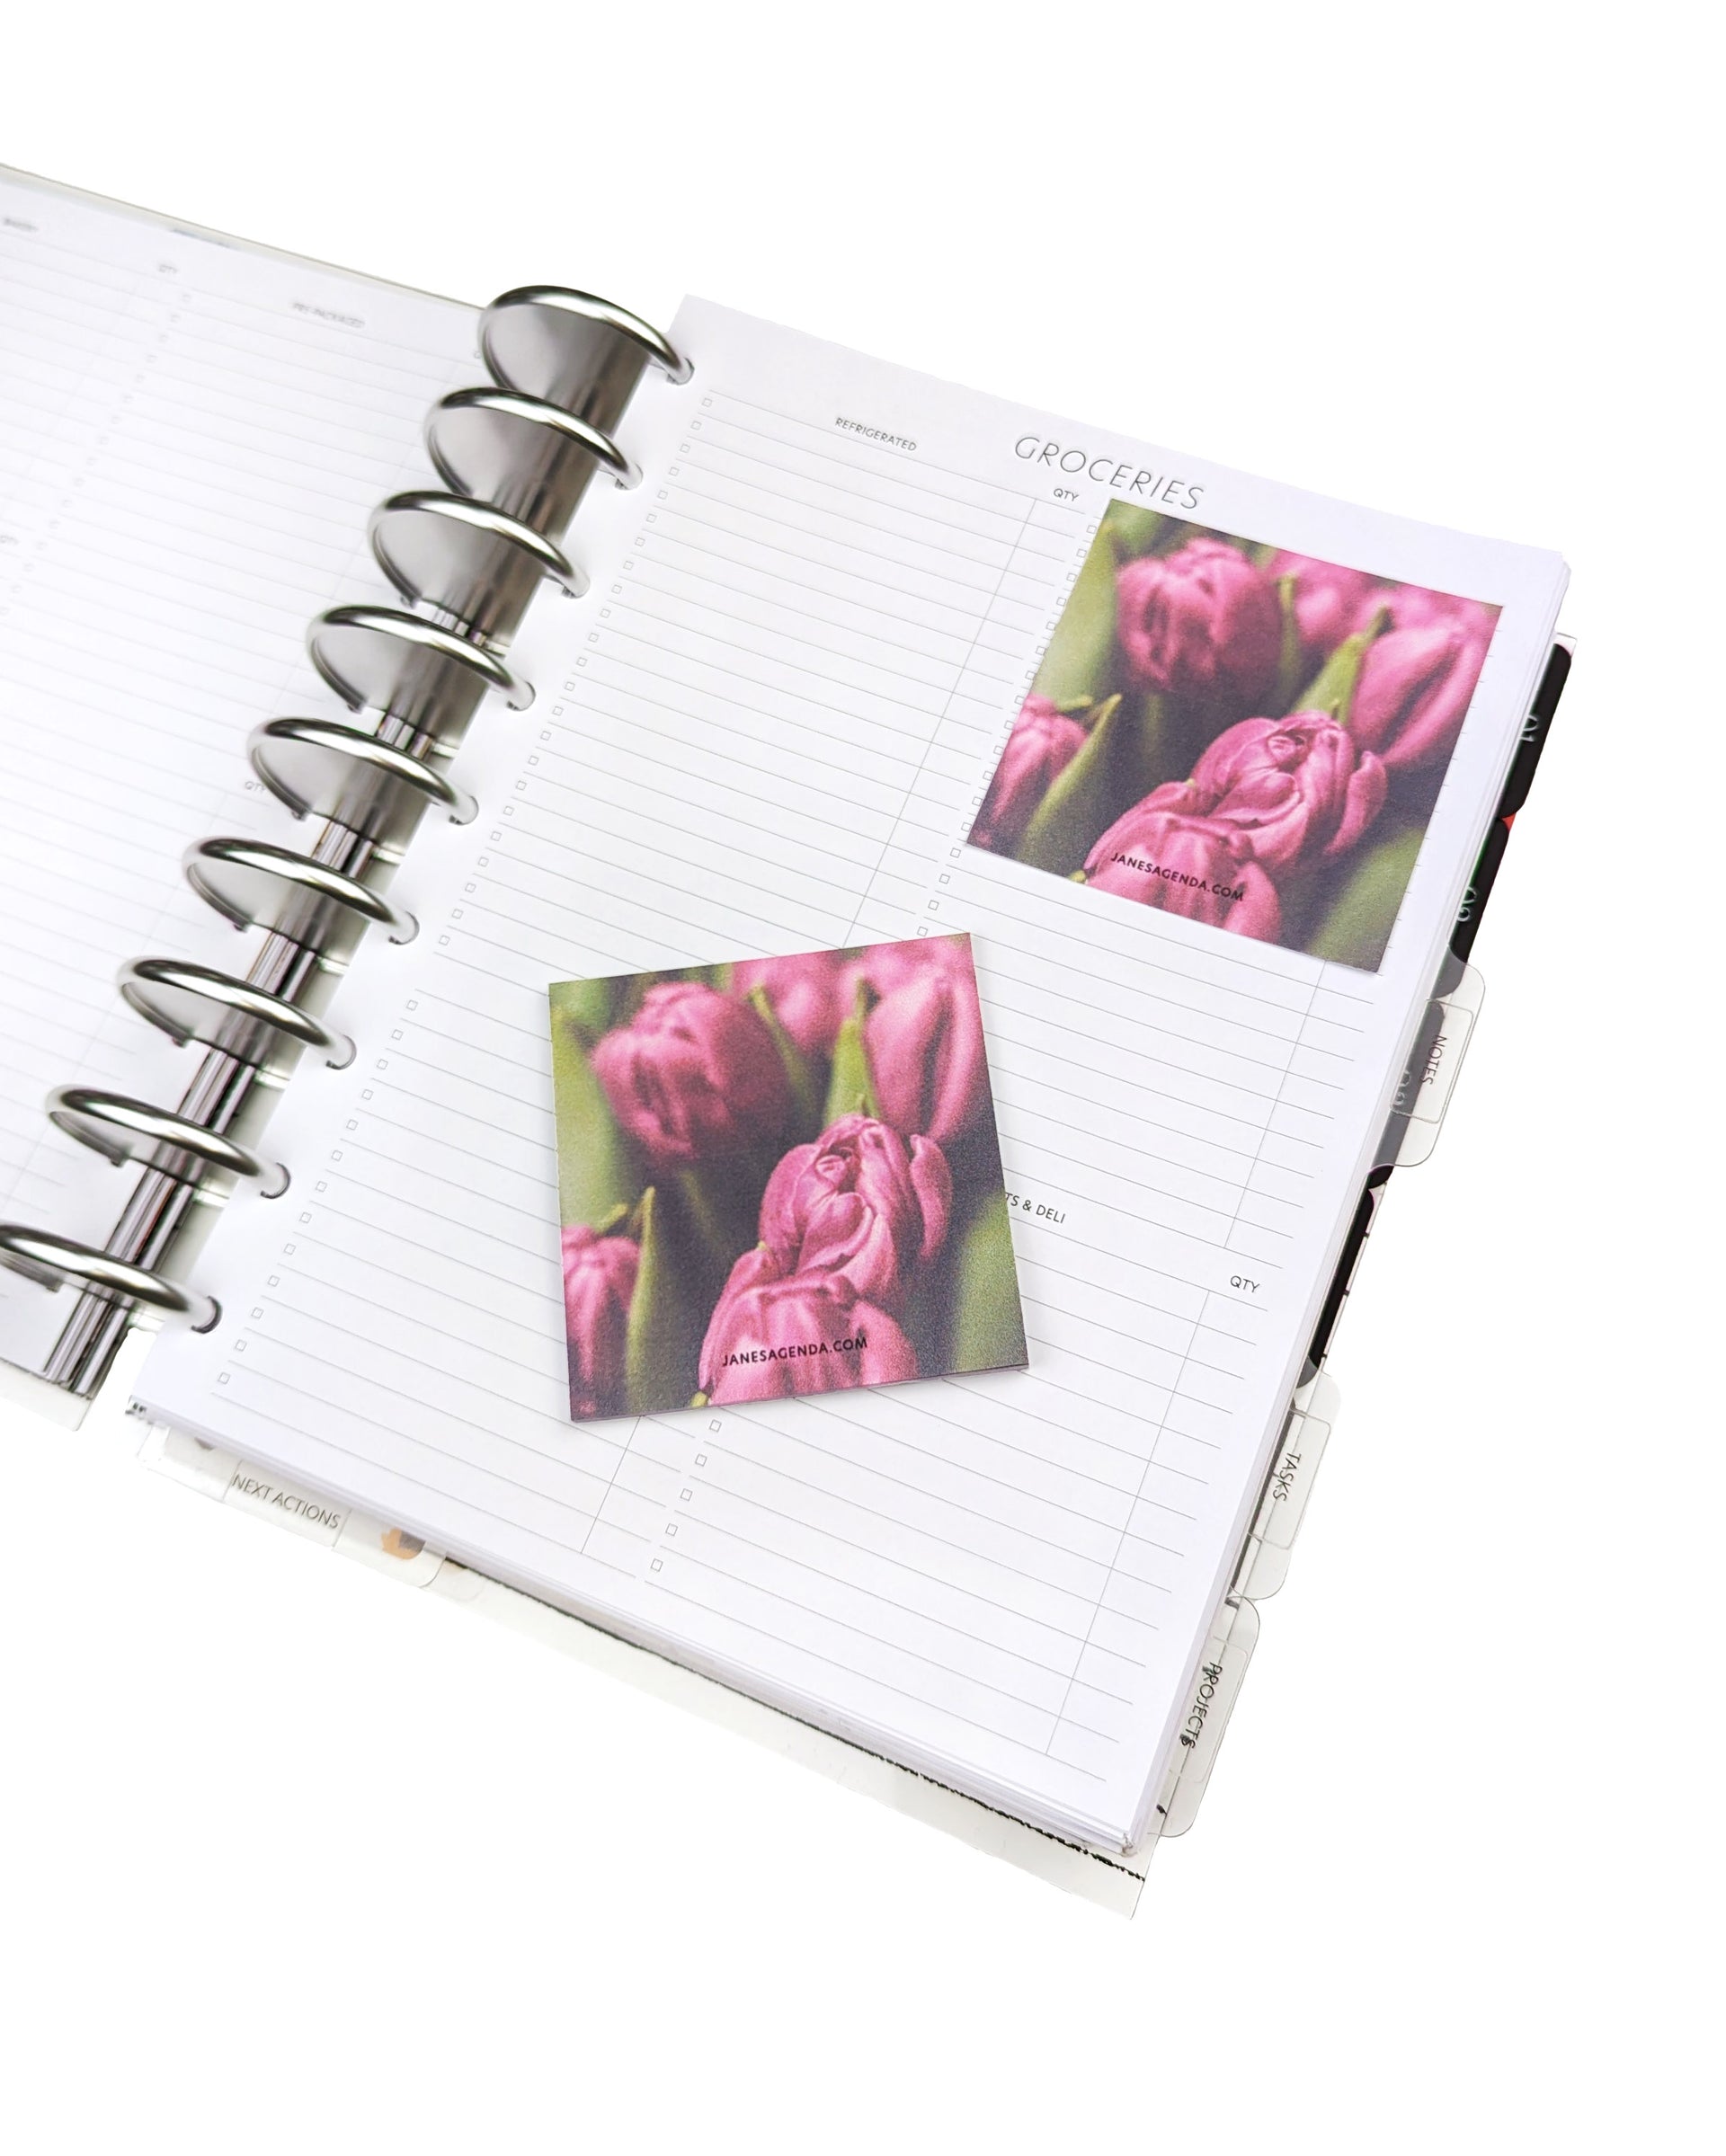 Decorative tulips sticky notes by Jane's Agenda.